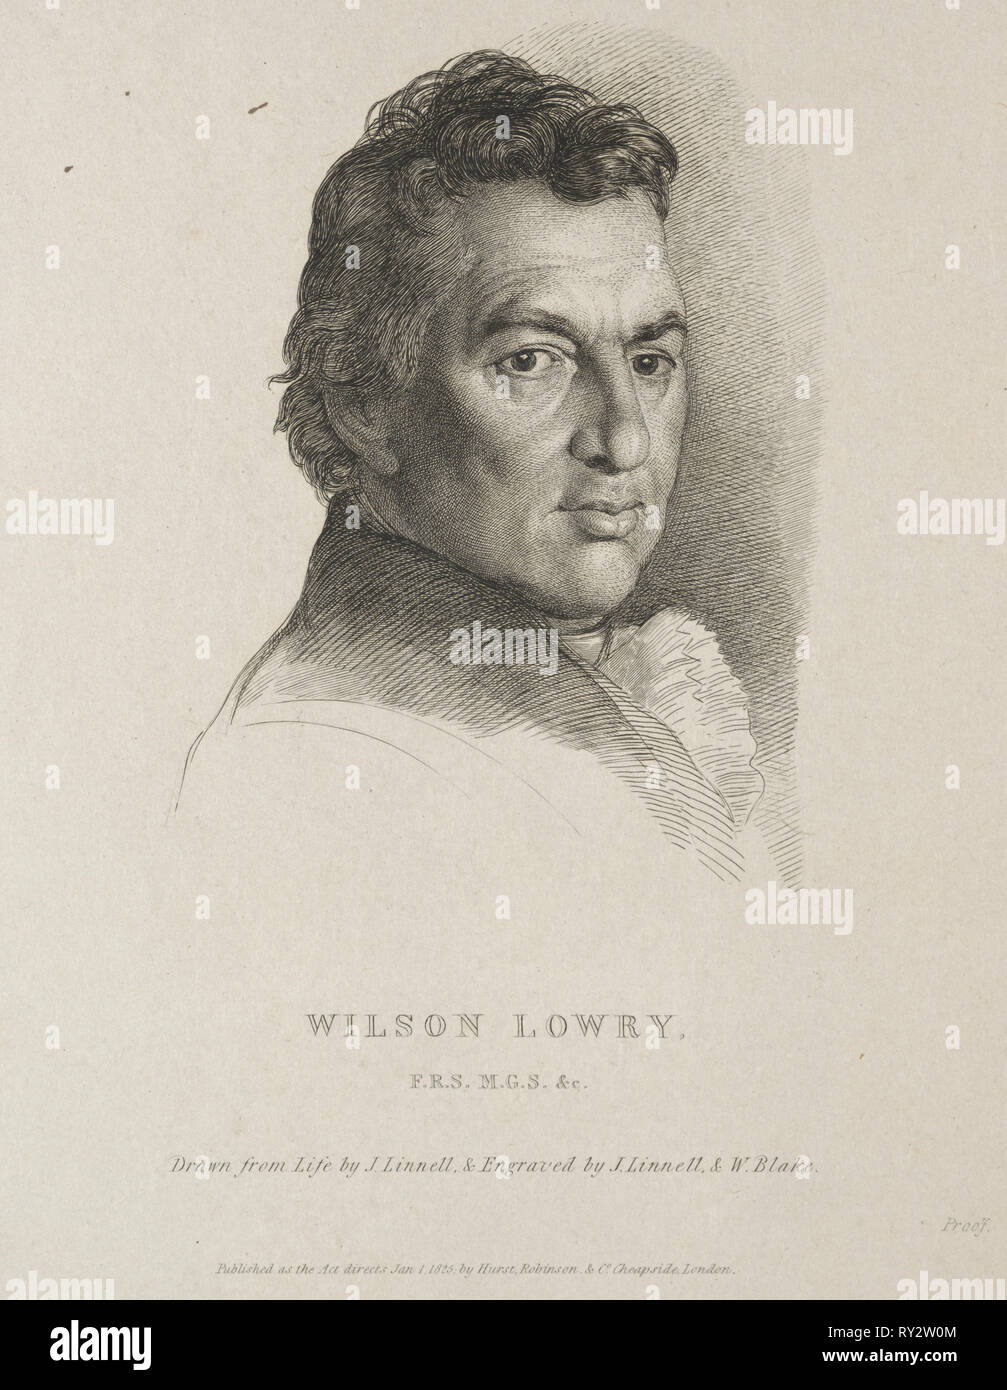 Wilson Lowry, 1825. William Blake (British, 1757-1827), and John Linnell (British, 1792-1882). Engraving Stock Photo